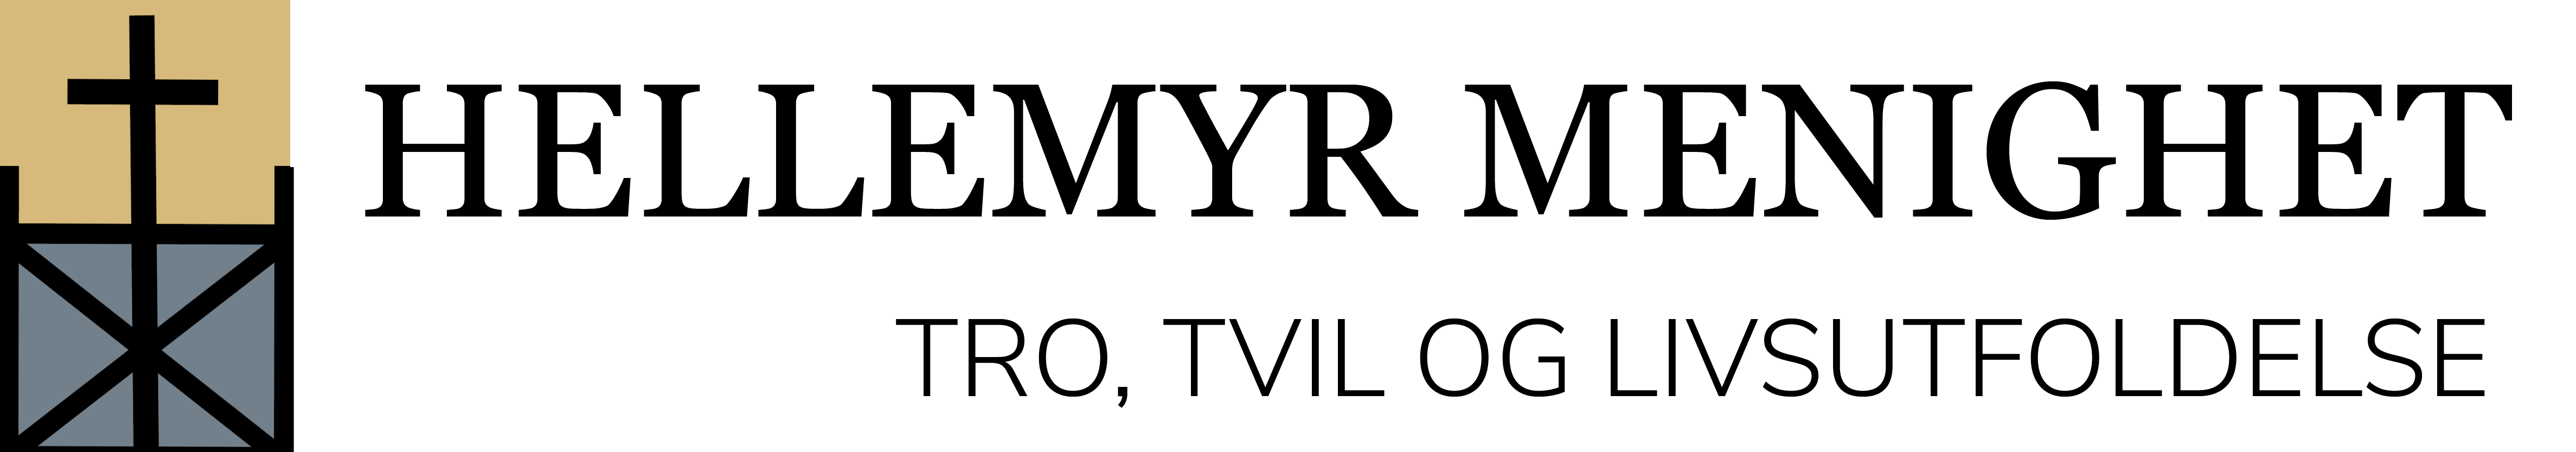 Hellemyr menighet logo